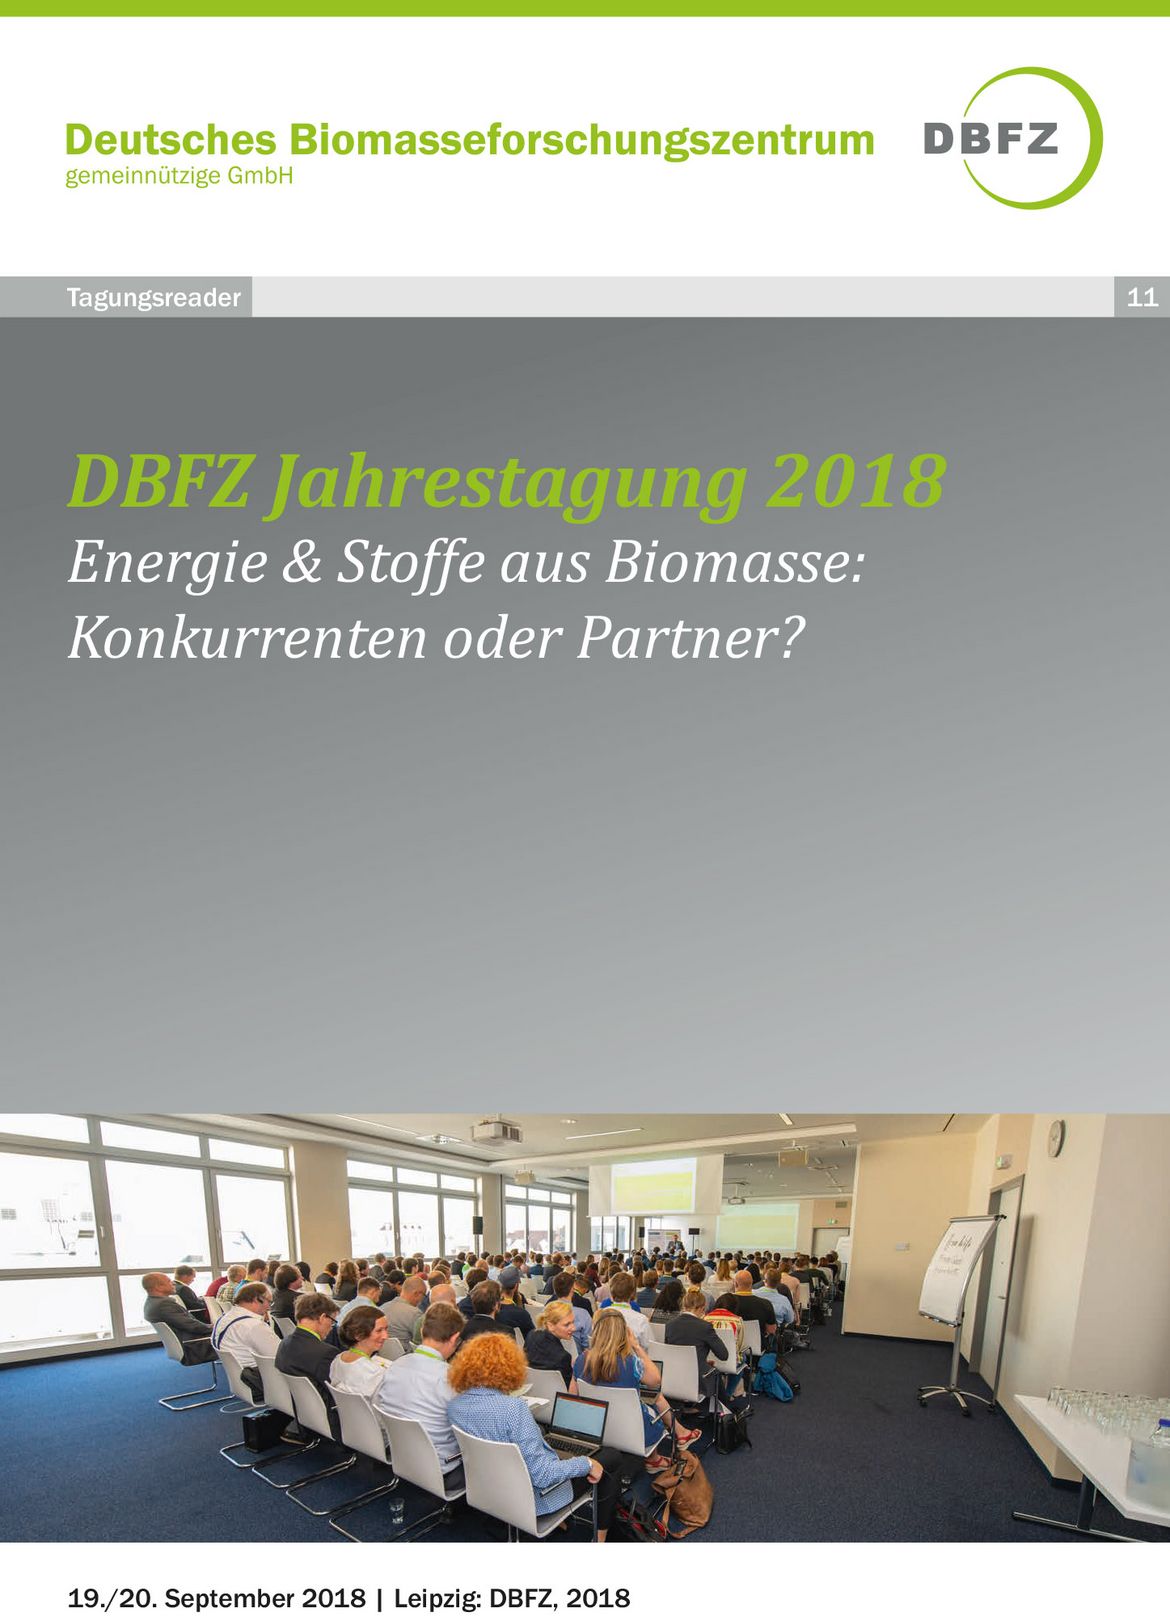 DBFZ Jahrestagung 2018